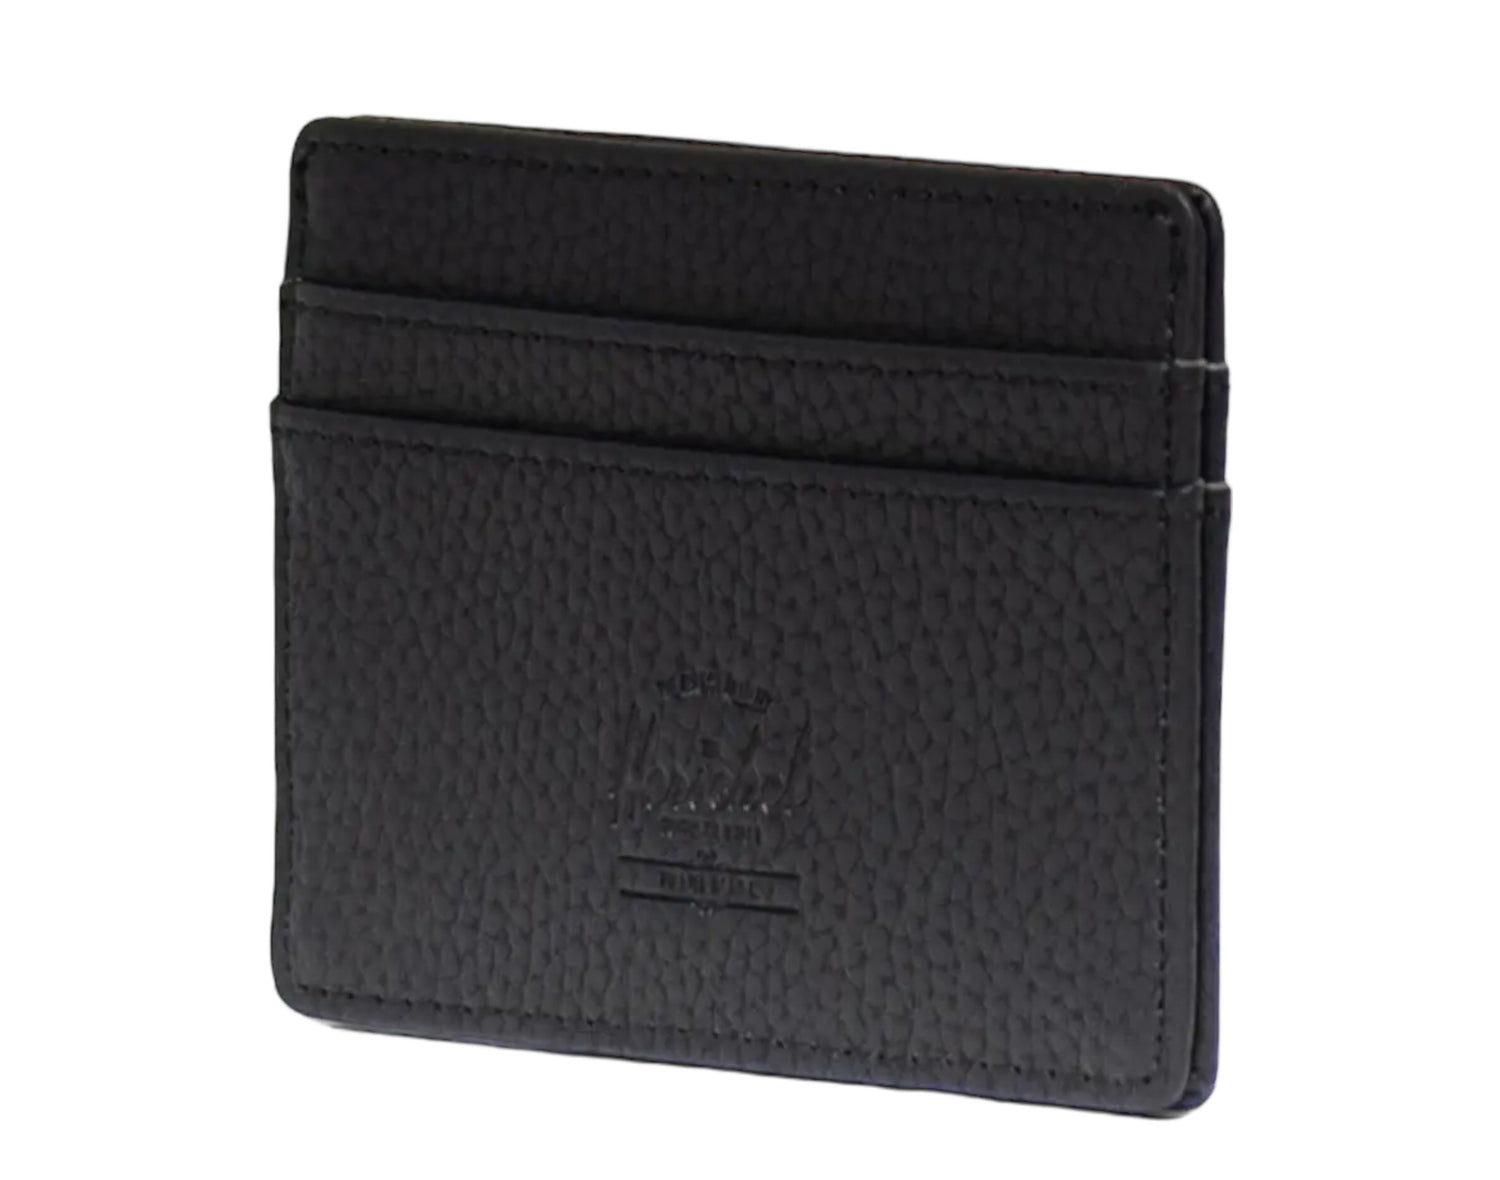 Herschel Supply Co. Charlie Cardholder Wallet Vegan Leather